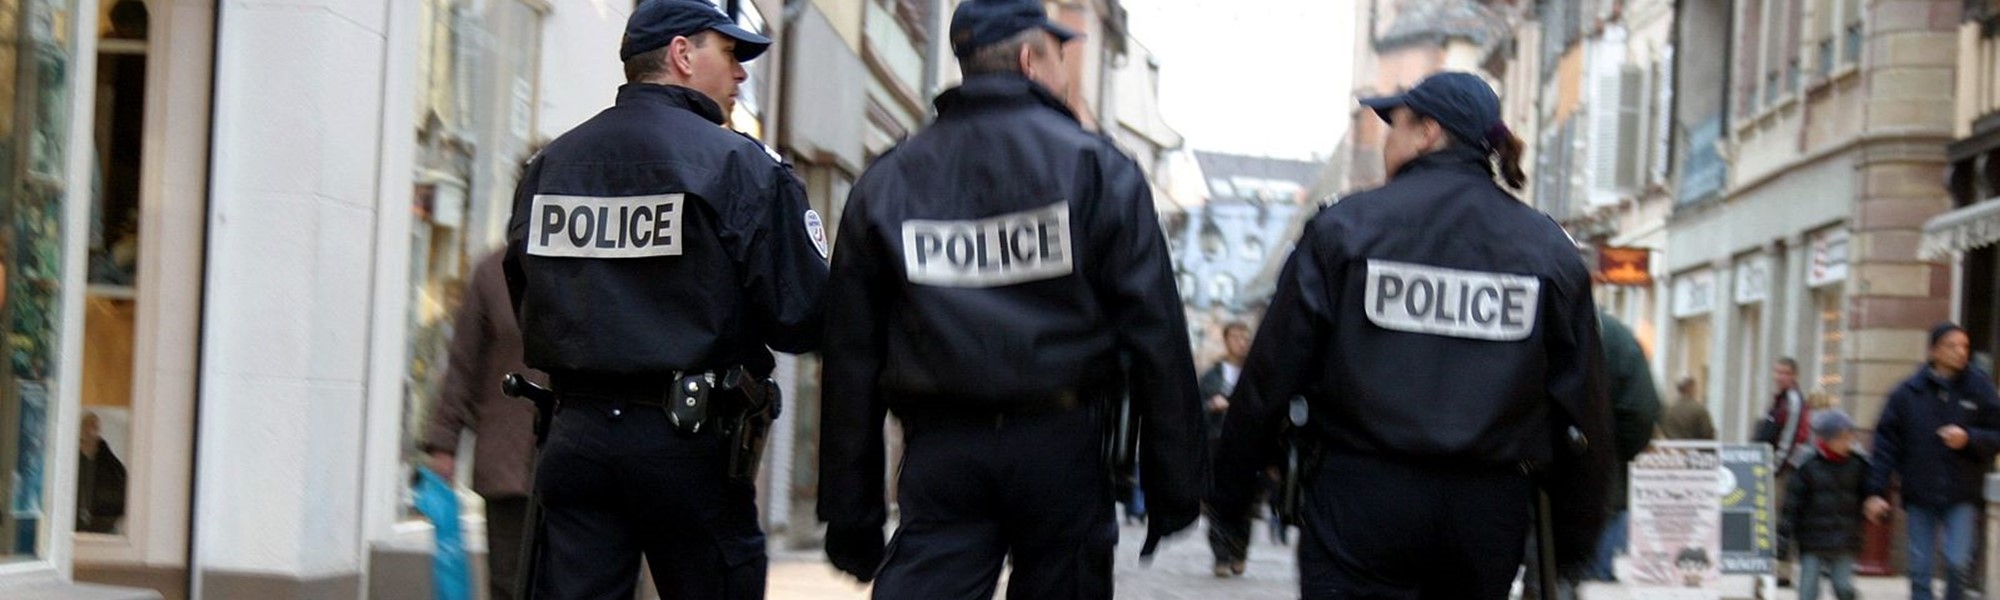 Violences, police, quartiers : l'opinion des Français est plus nuancée que polarisée